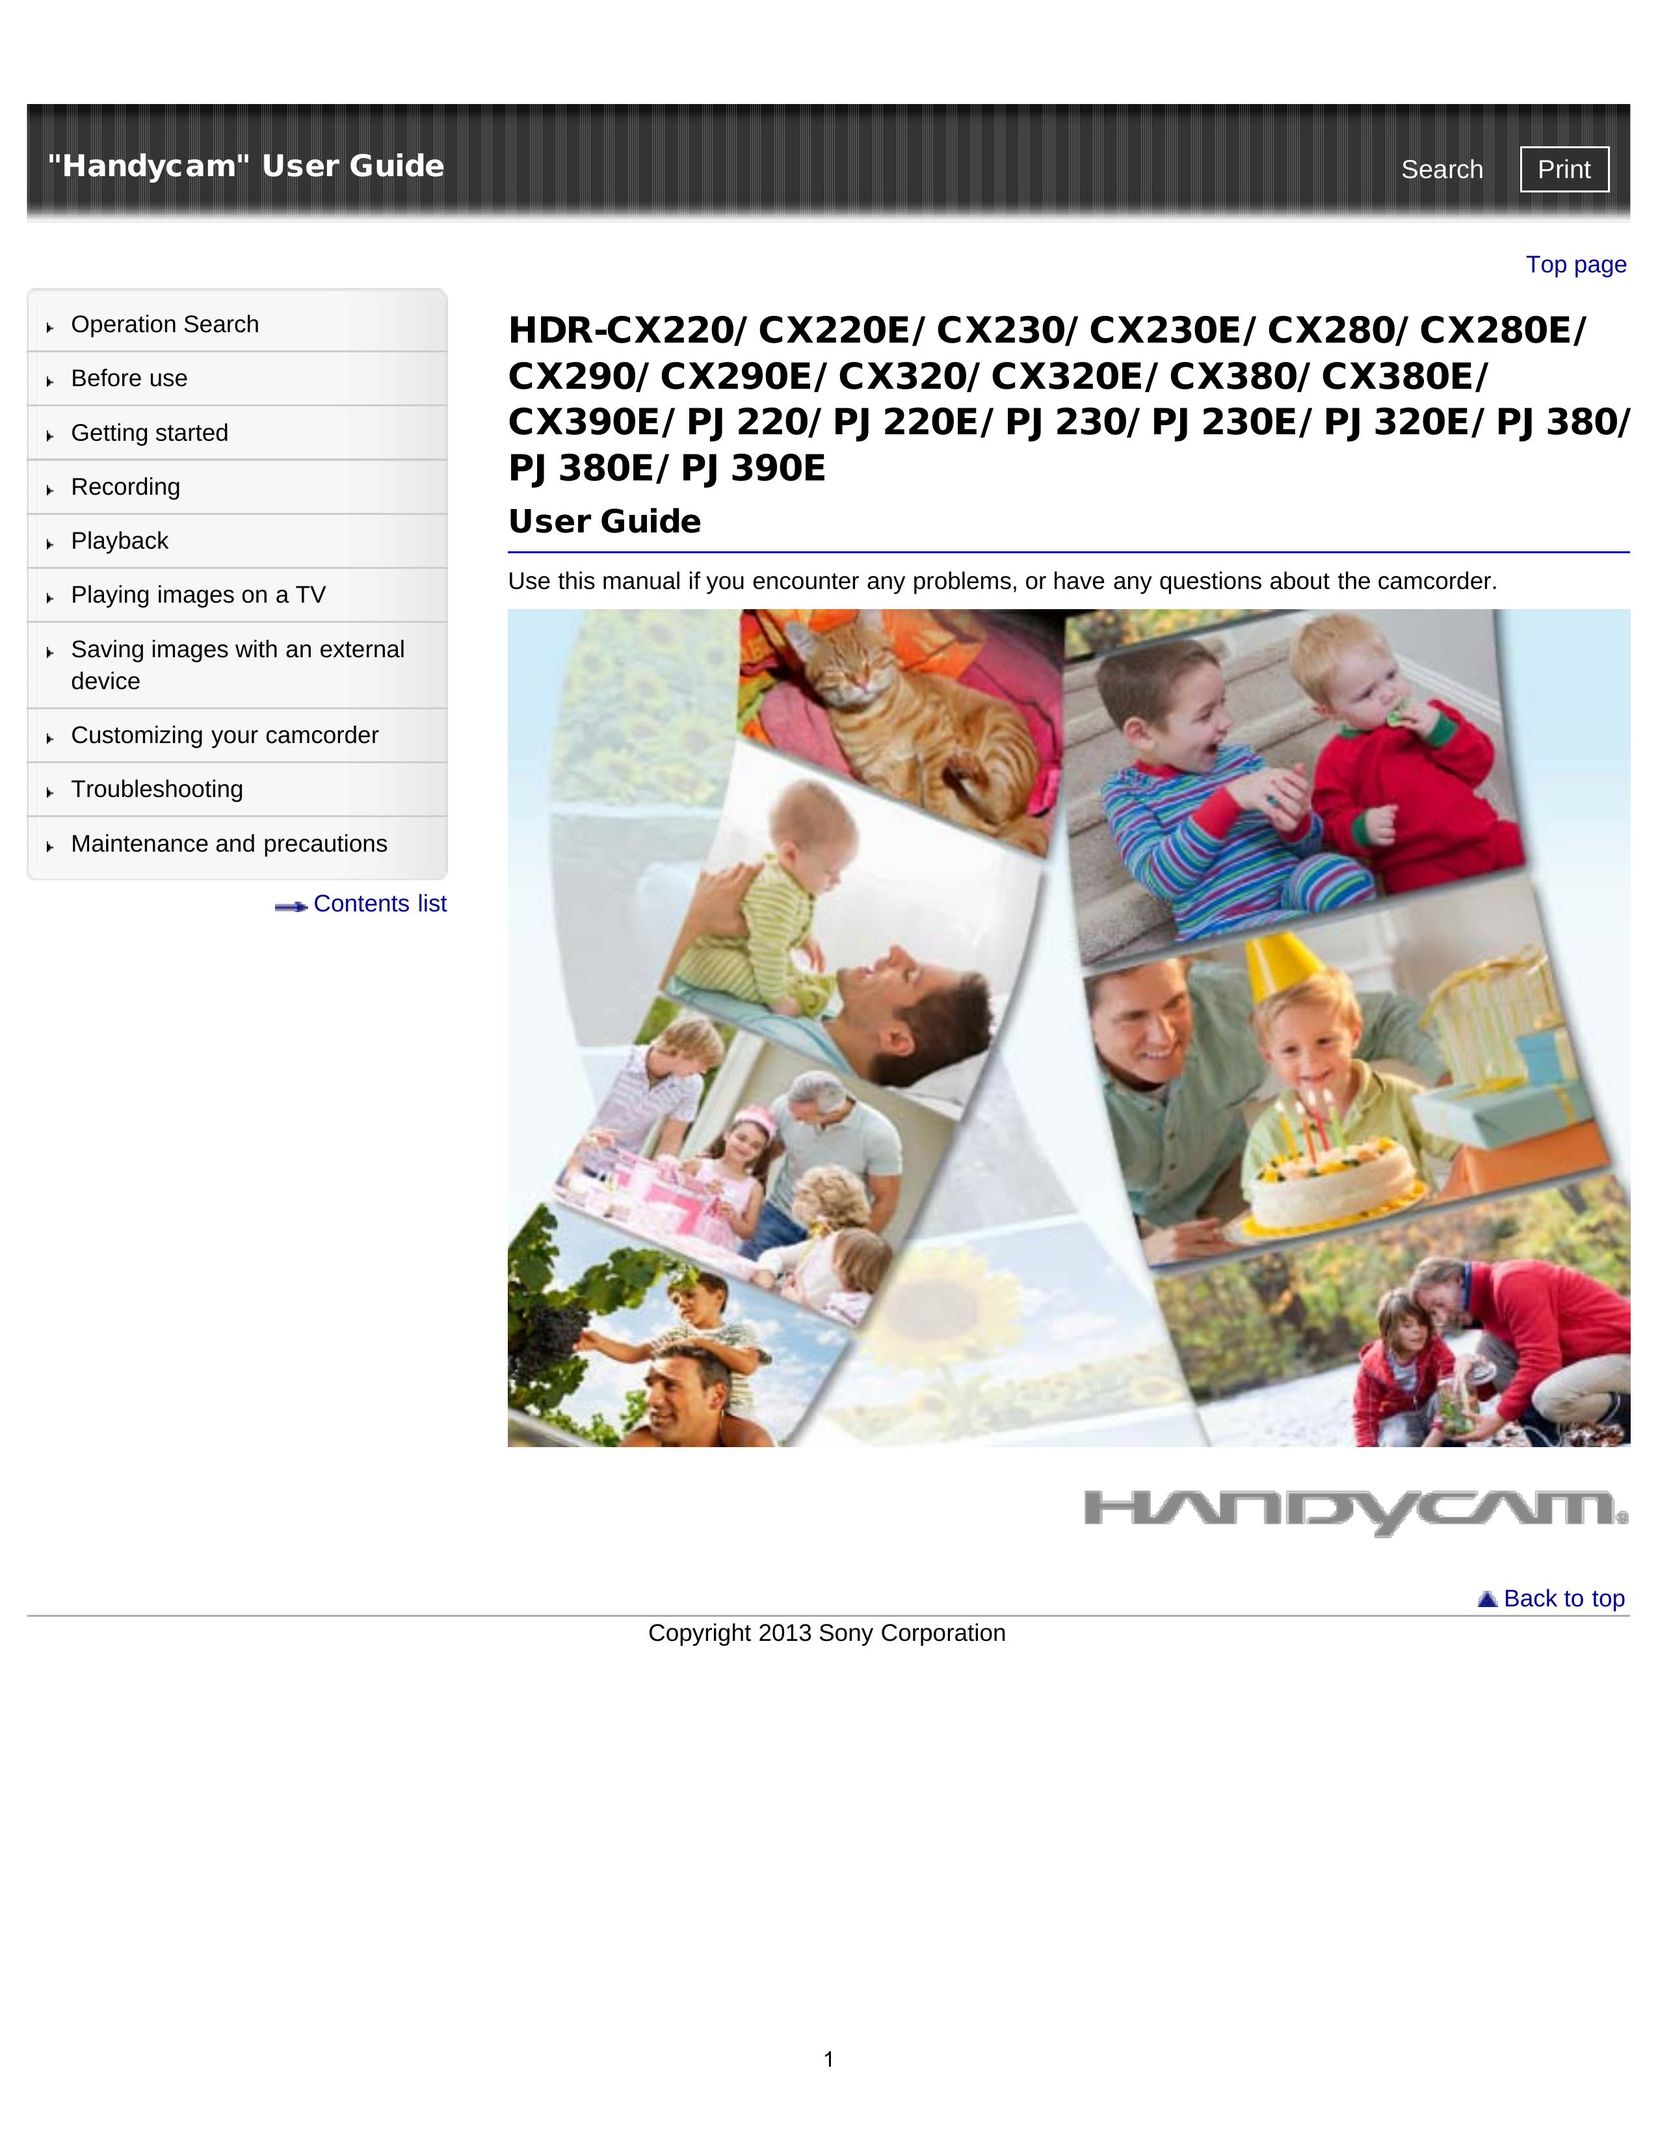 Sony HDR-CX220/ CX220E/ CX230/ CX230E/ CX280/ CX280E/ CX290/ CX290E/ CX320/ CX320E/ CX380/ CX380E/ CX390E/ PJ220/ PJ220E Webcam User Manual